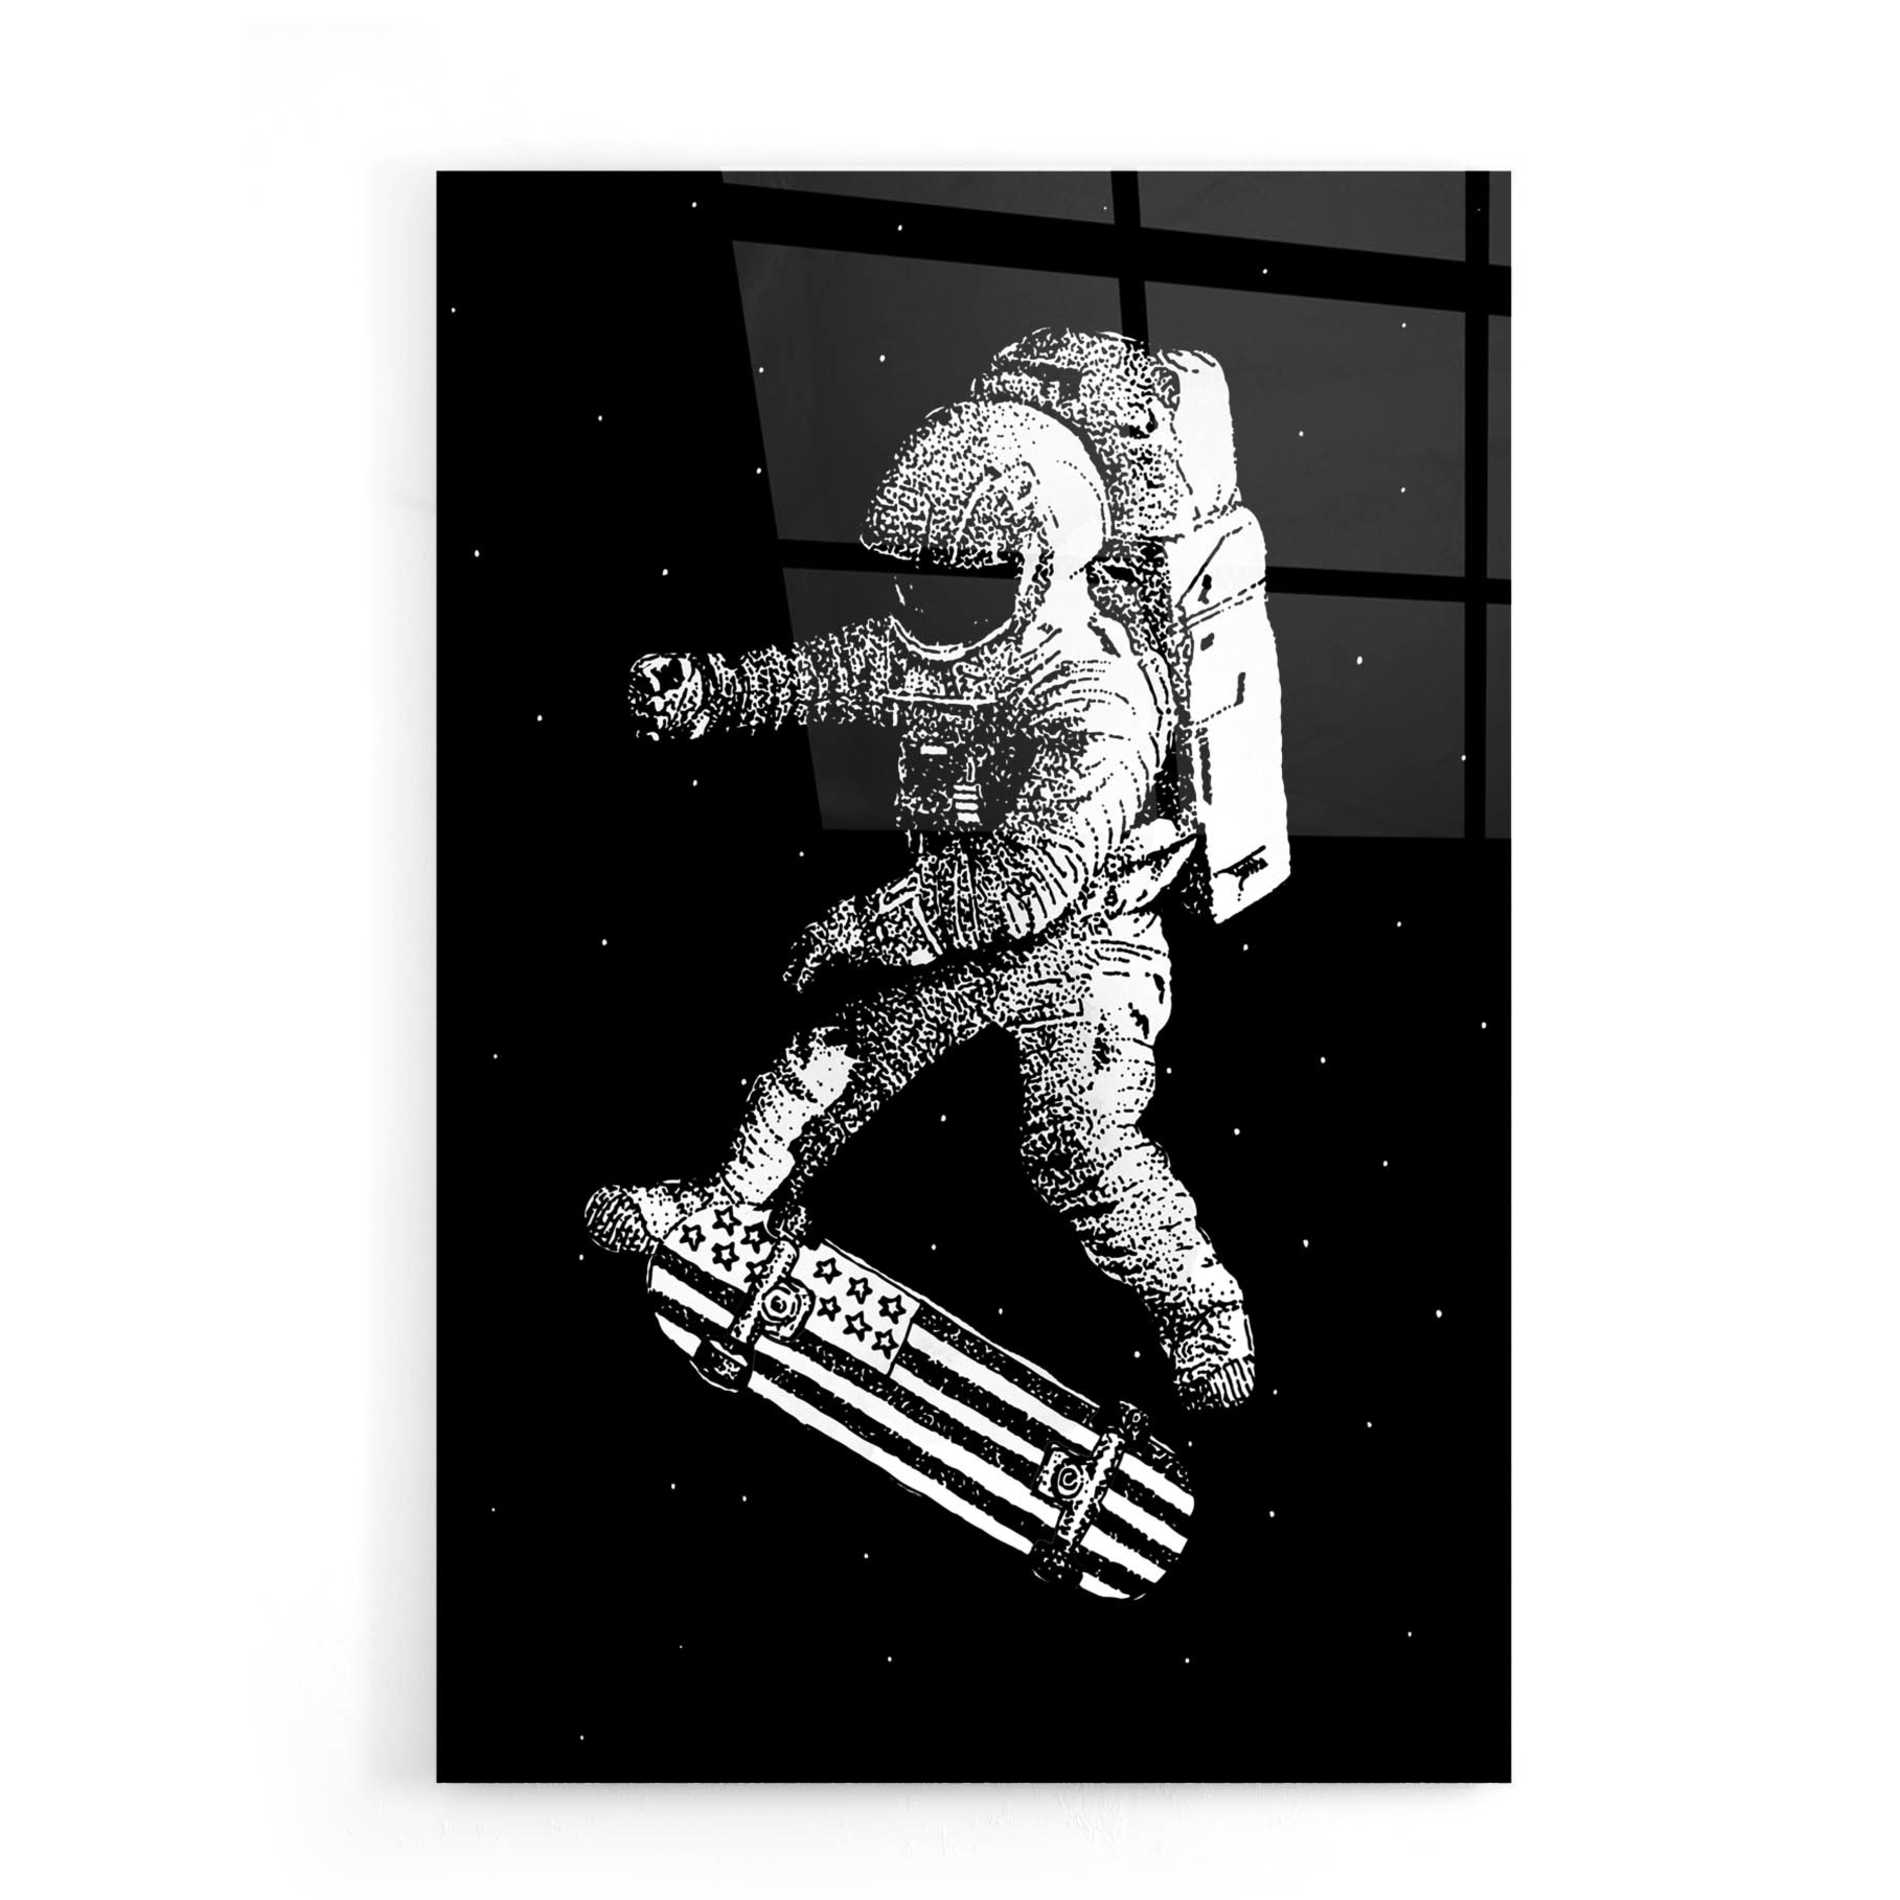 Epic Art 'Kickflip in Space' by Robert Farkas, Acrylic Glass Wall Art,16x24